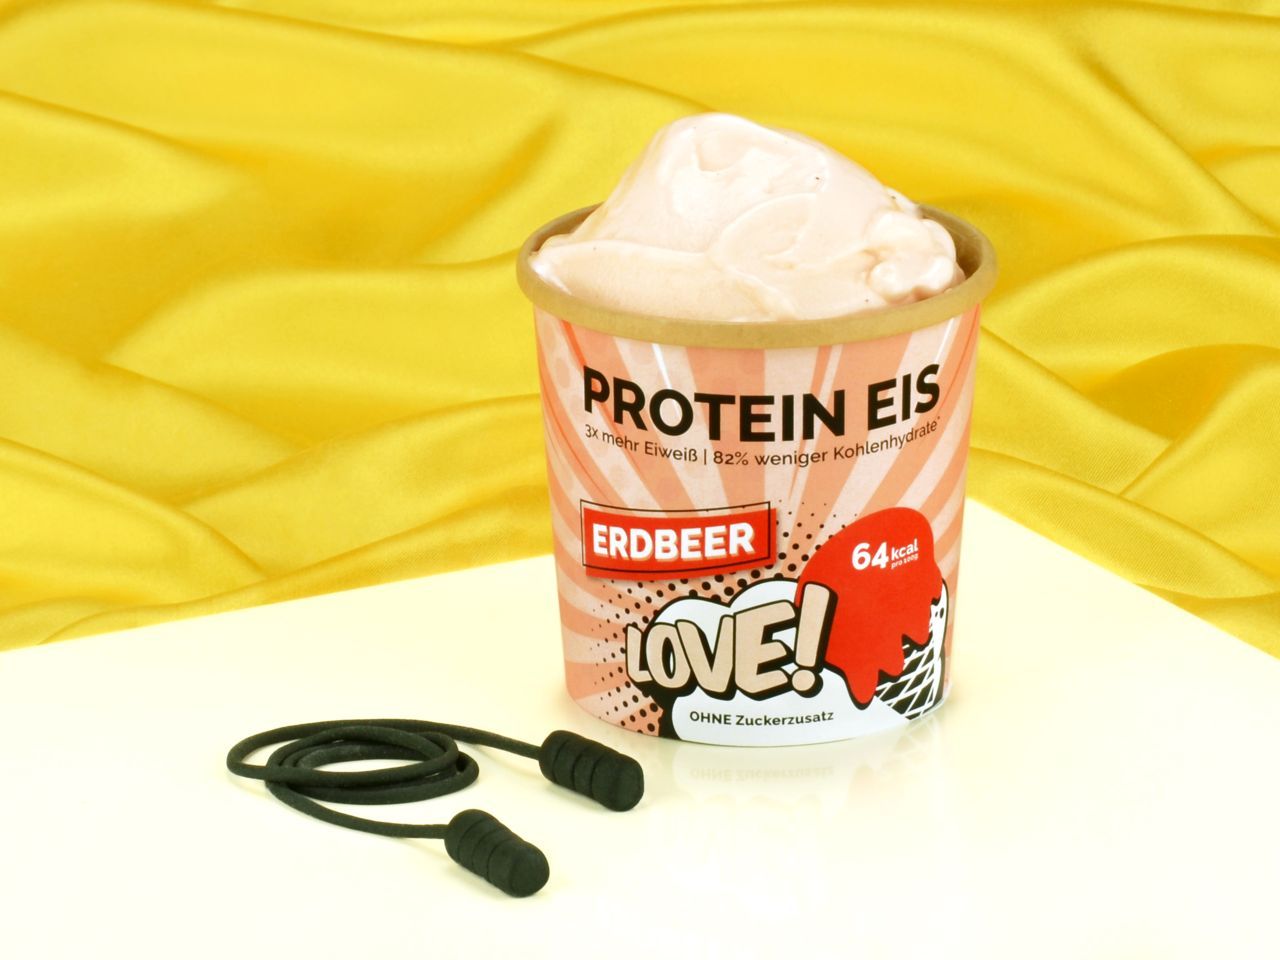 Protein Eis Erdbeere 65g von Pati-Versand